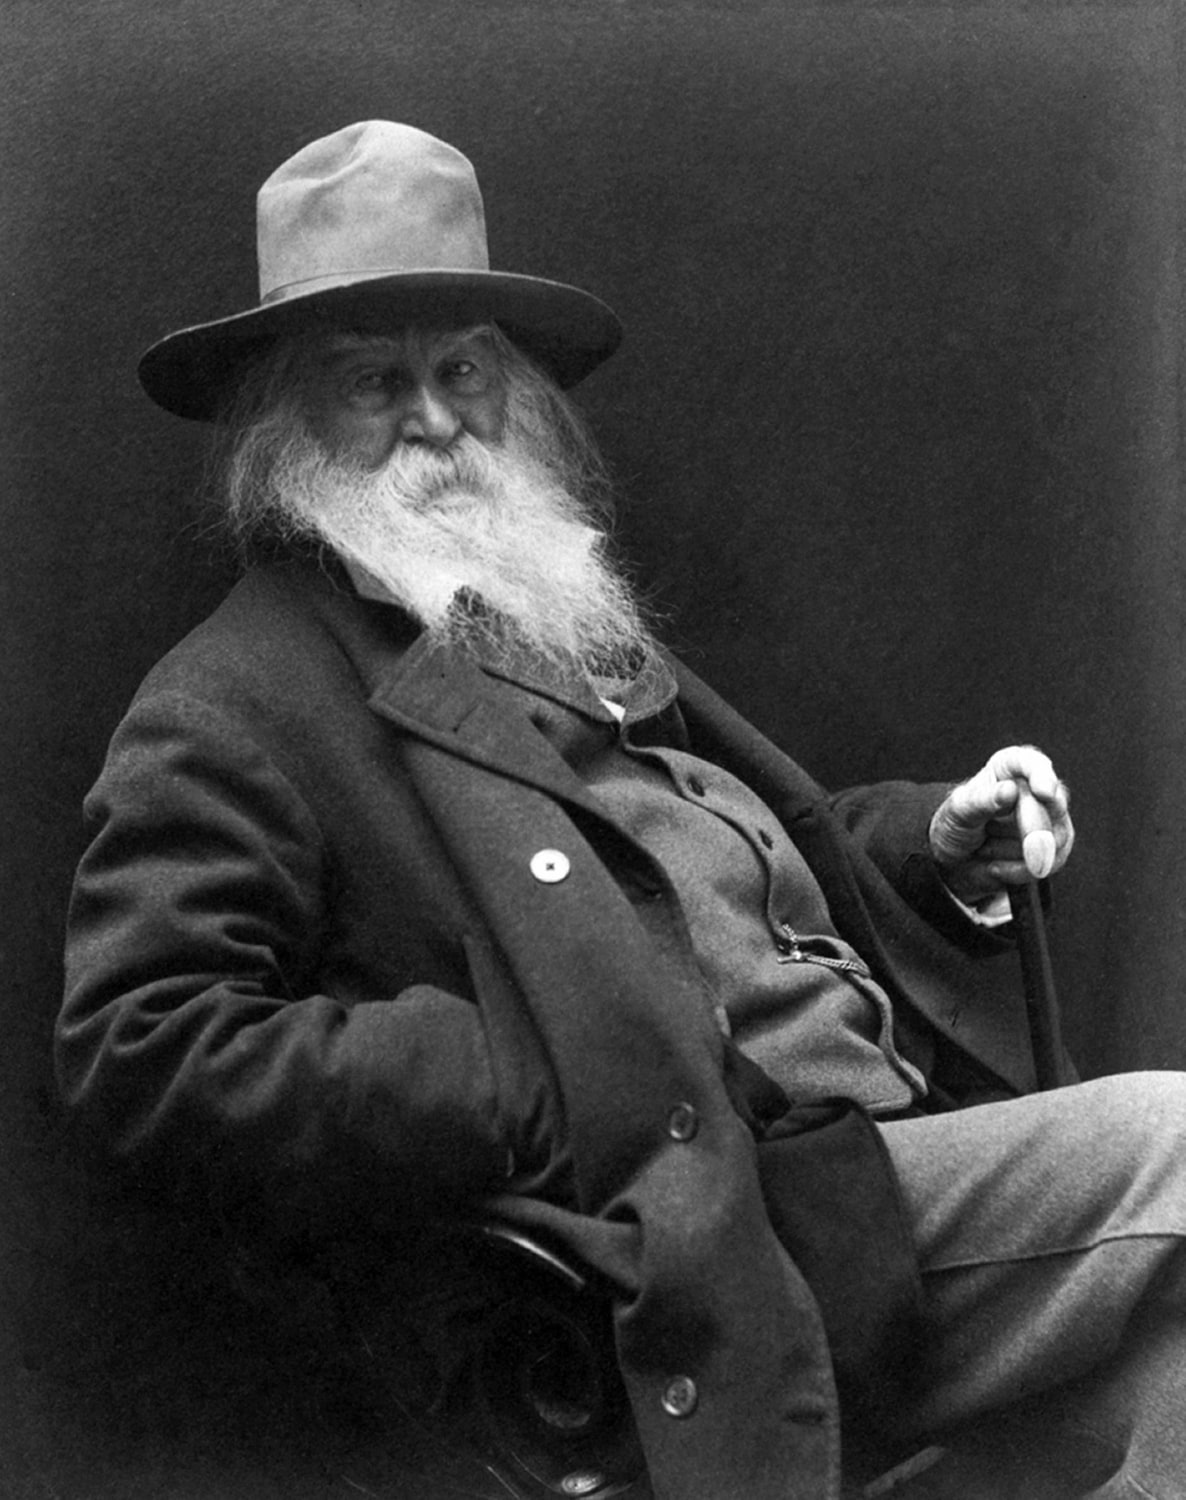 "Il problema non è che Walt Whitman abbia scritto Foglie d'erba, ma che non lo abbia bruciato subito dopo" - Thomas Wentworth Higginson, The Atlantic, 1867